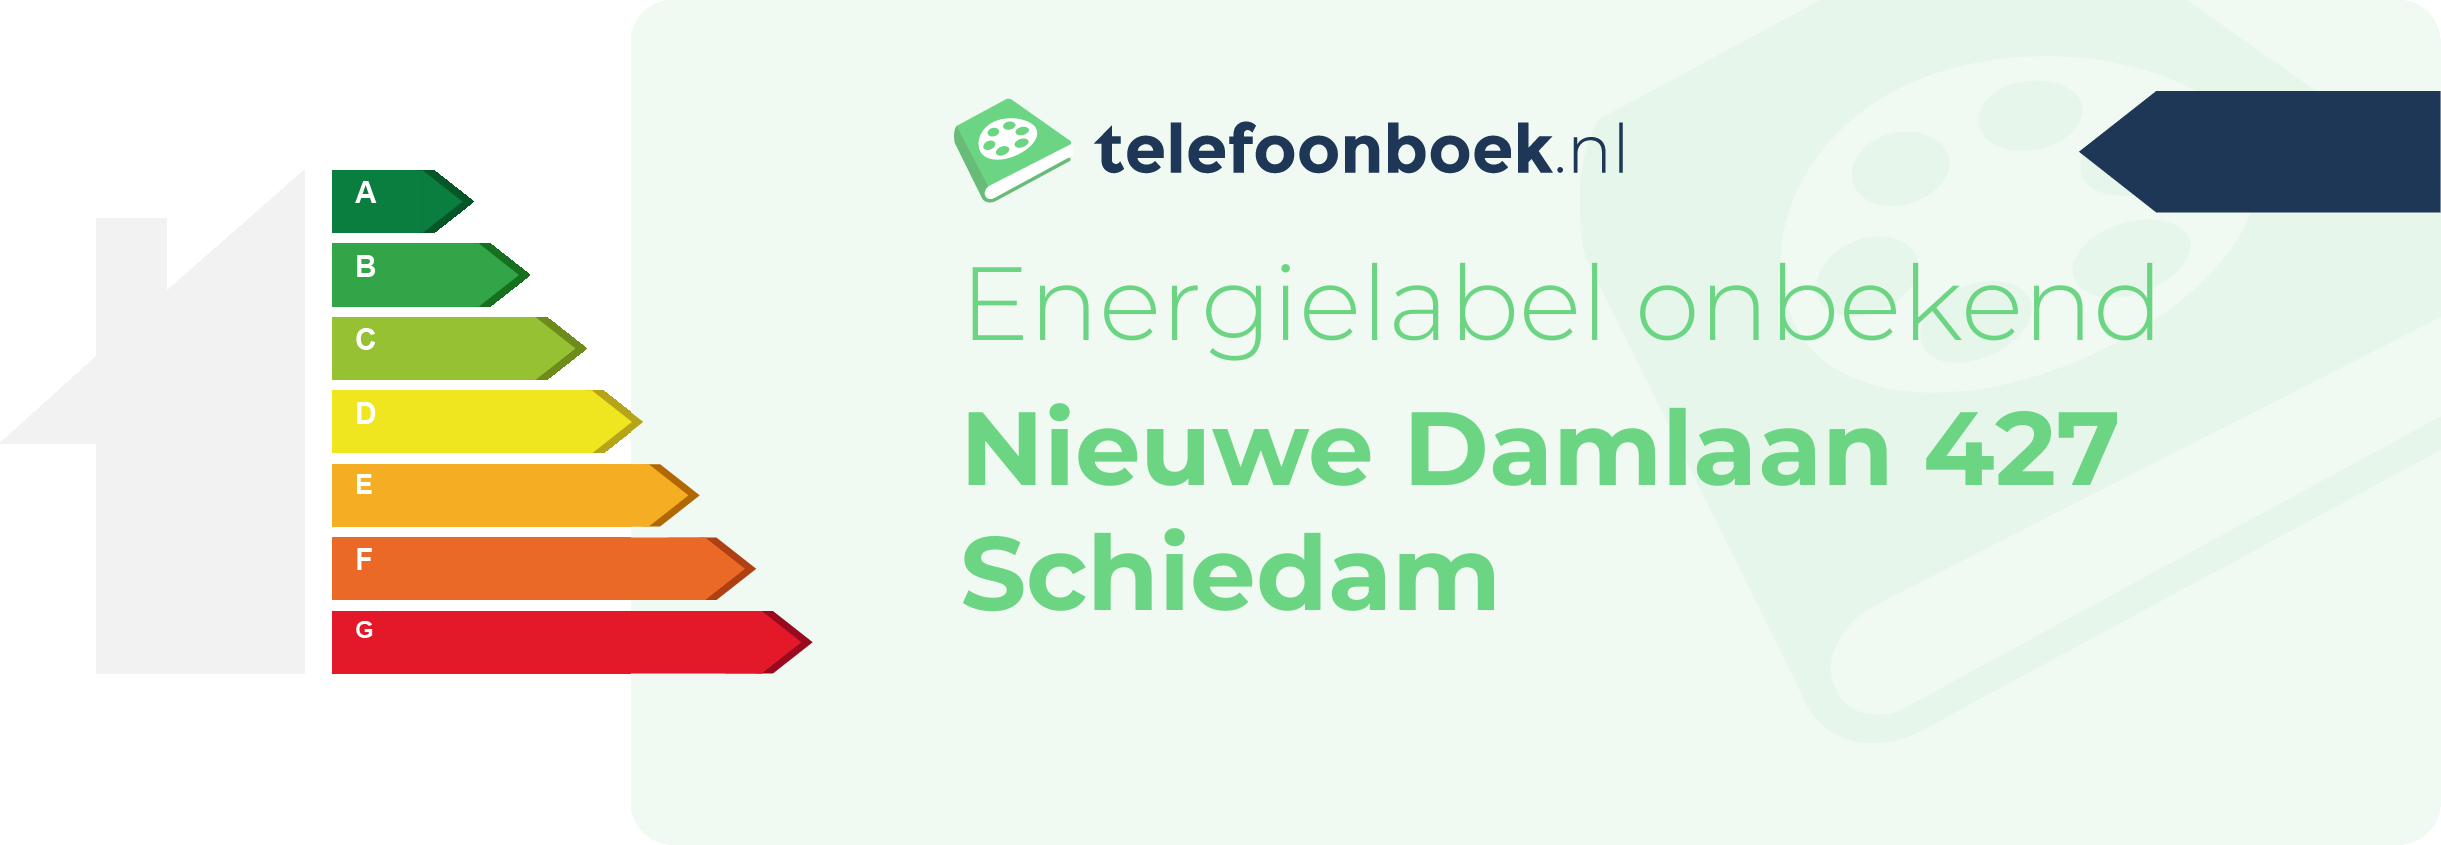 Energielabel Nieuwe Damlaan 427 Schiedam